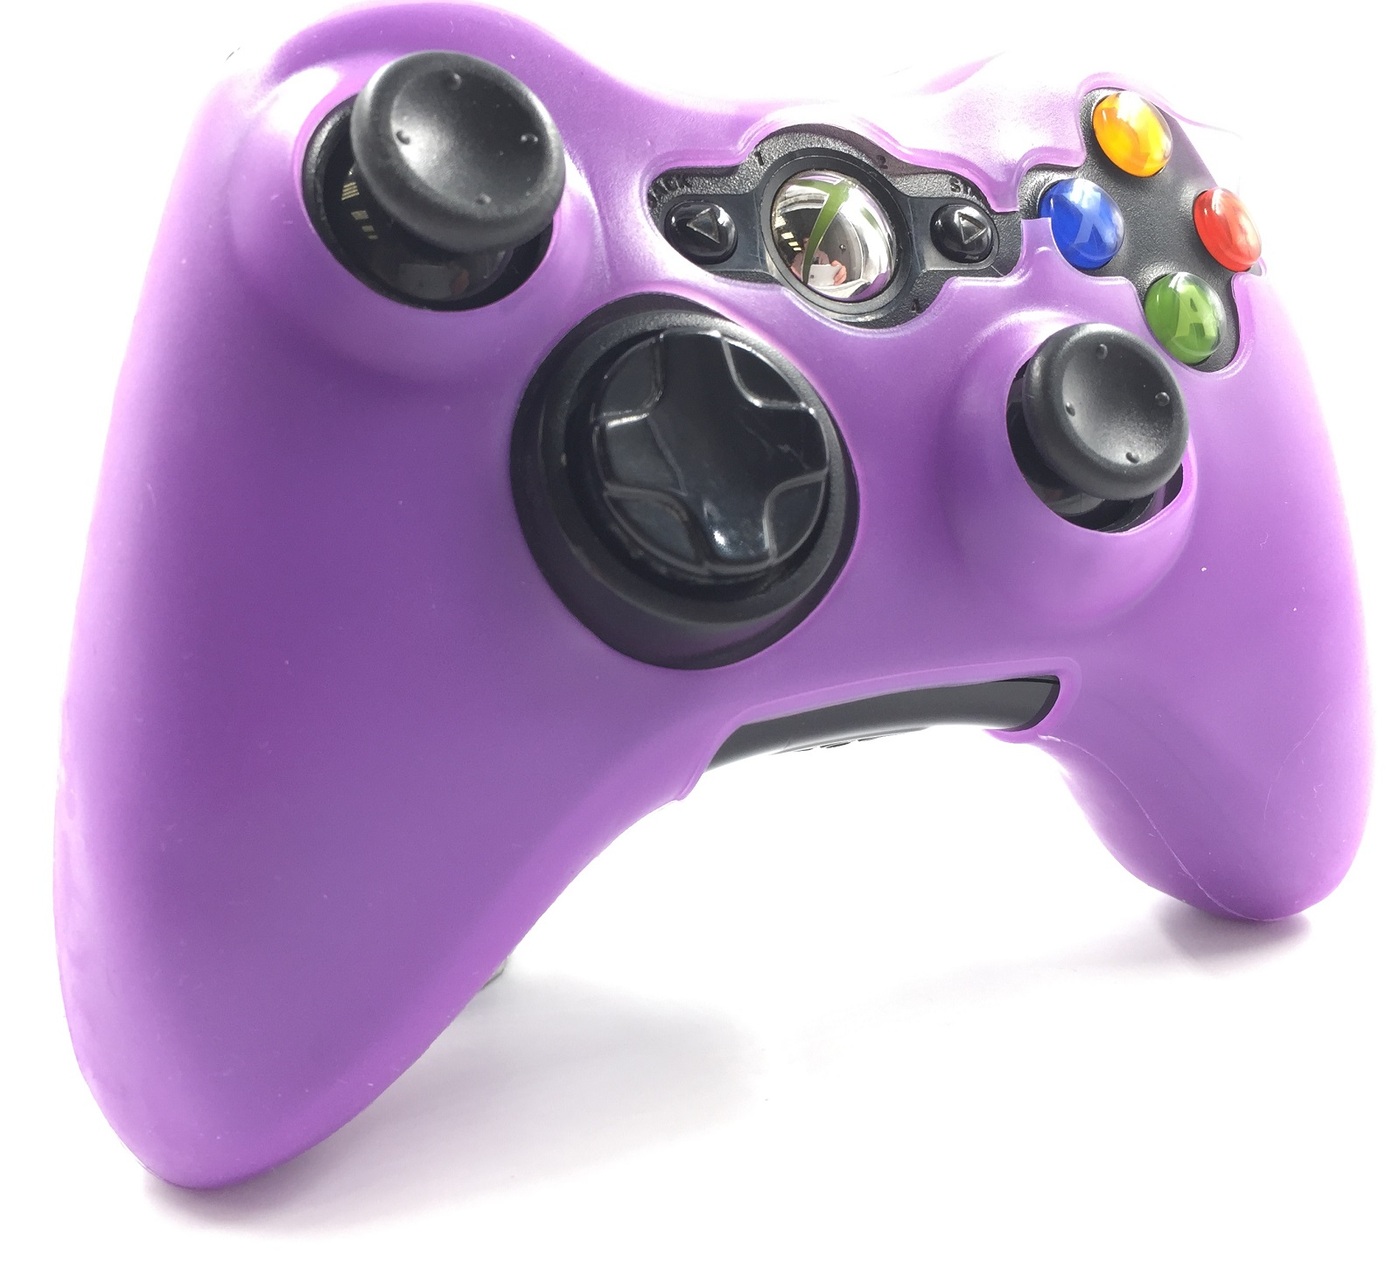 чехол на геймпад xbox 360 фиолетовый purpleполное силиконовое покрытие  защита от ударов